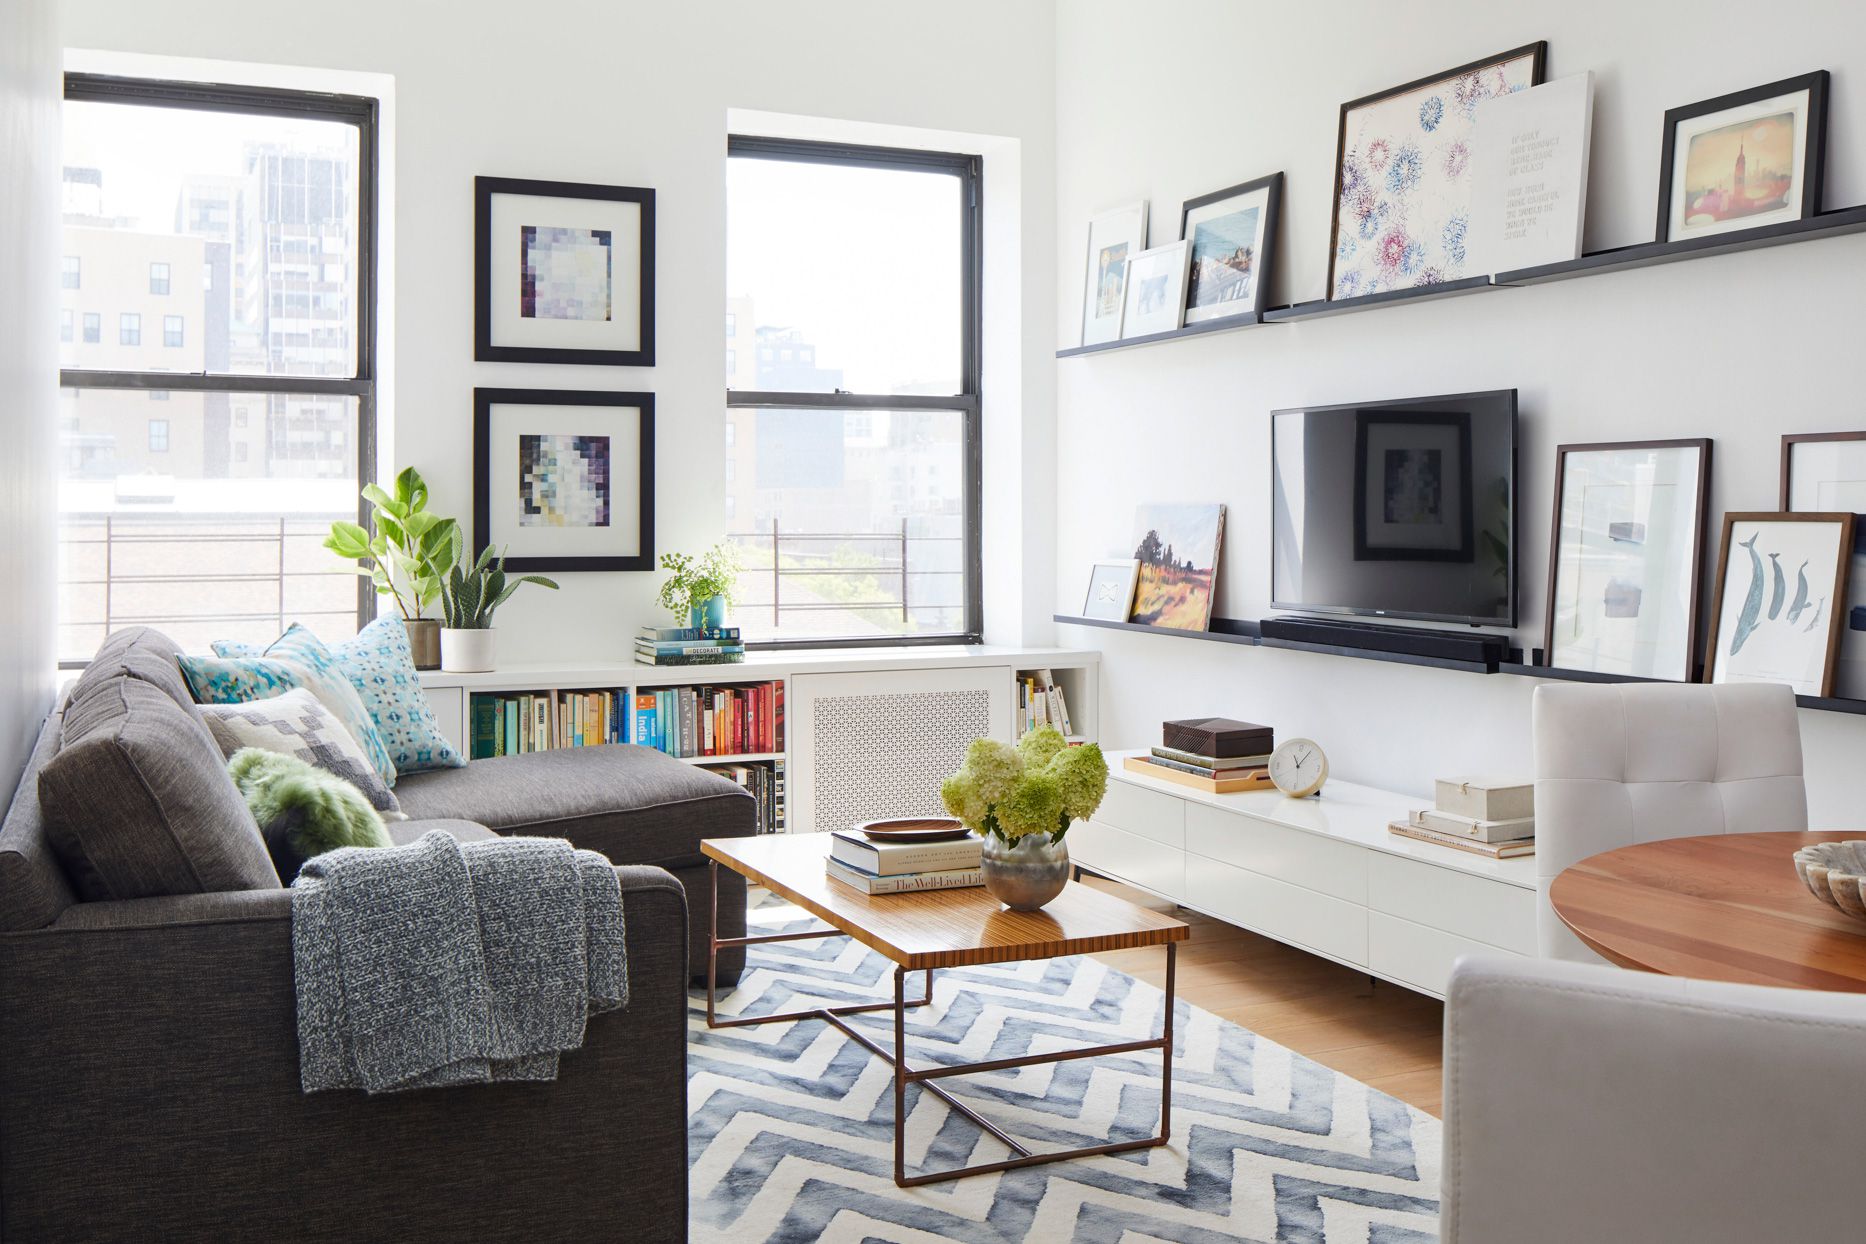 How do you maximize a tiny living space